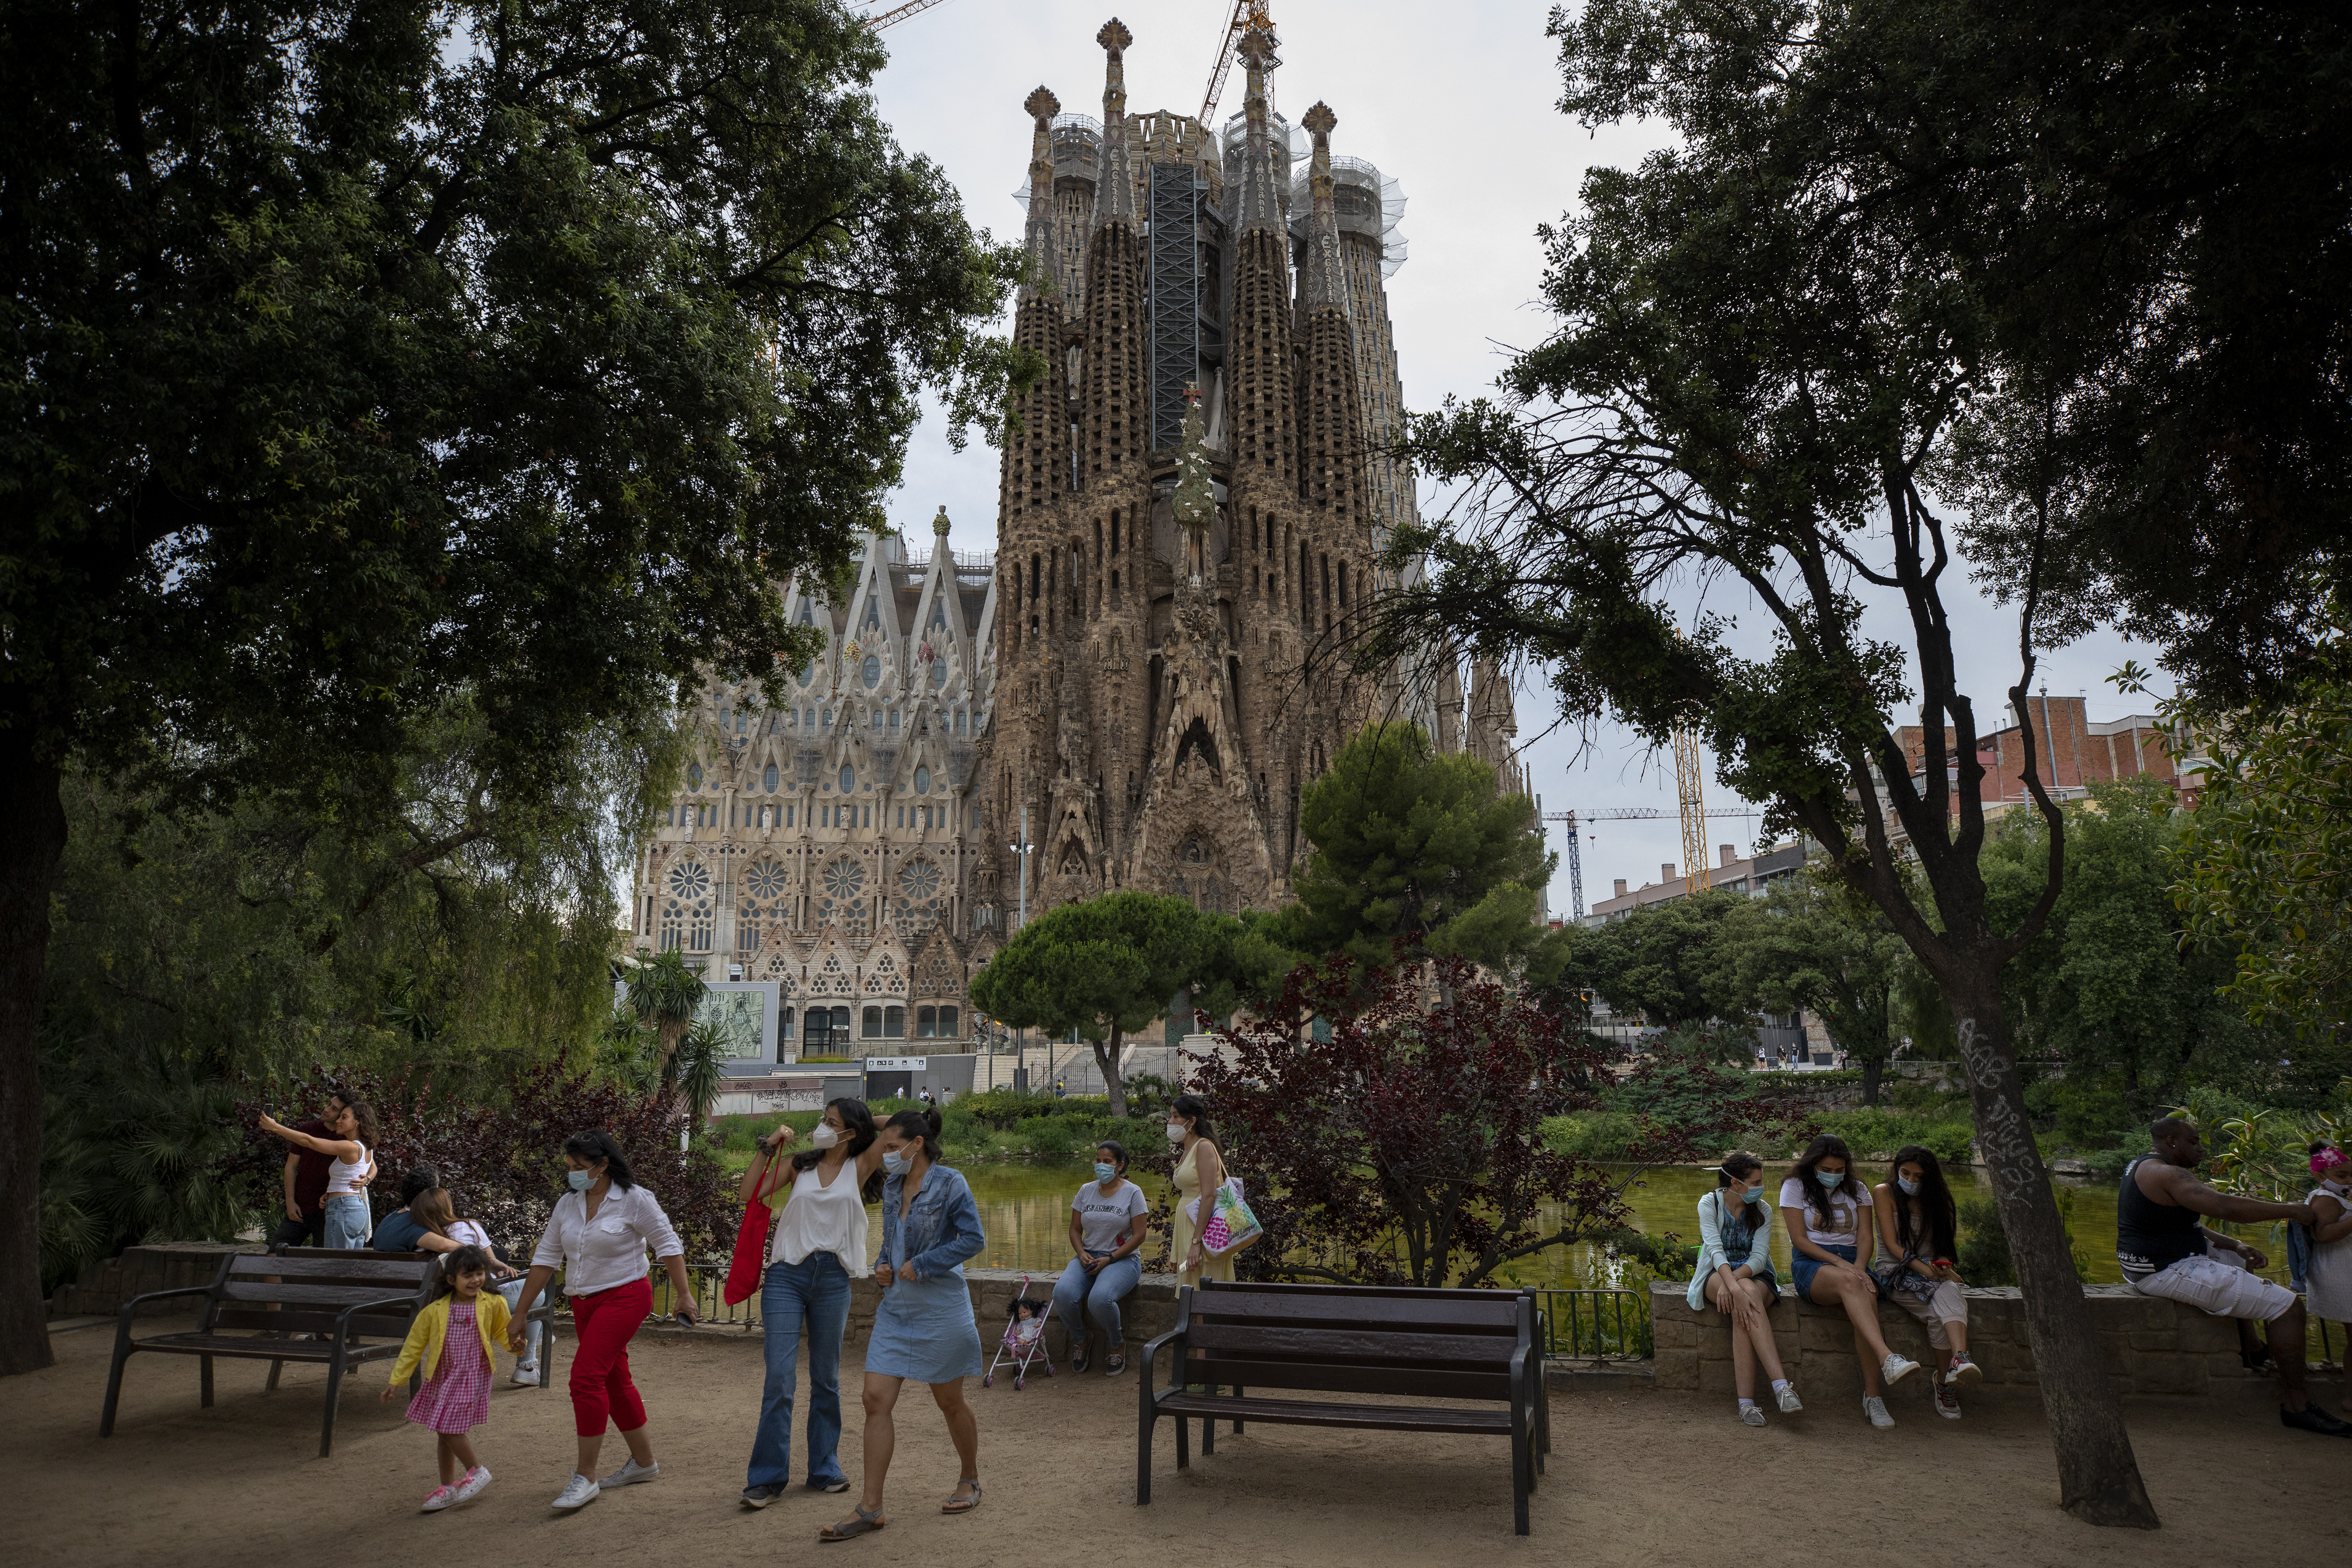 Miestni obyvatelia počas návštevy parku, ktorý sa nachádza vedľa Baziliky Sagrada Família v Barcelone. Bazilika je najvýznamnejším dielom architekta Antonia Gaudího.